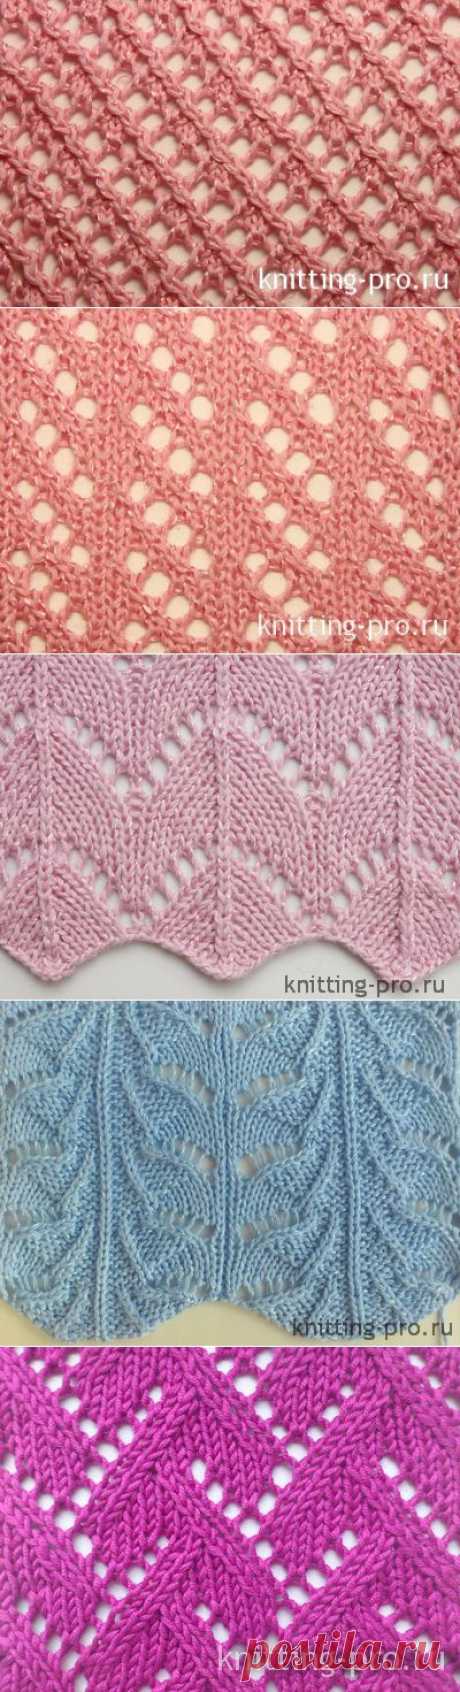 Ажурные узоры - knitting-pro.ru - От азов к мастерству